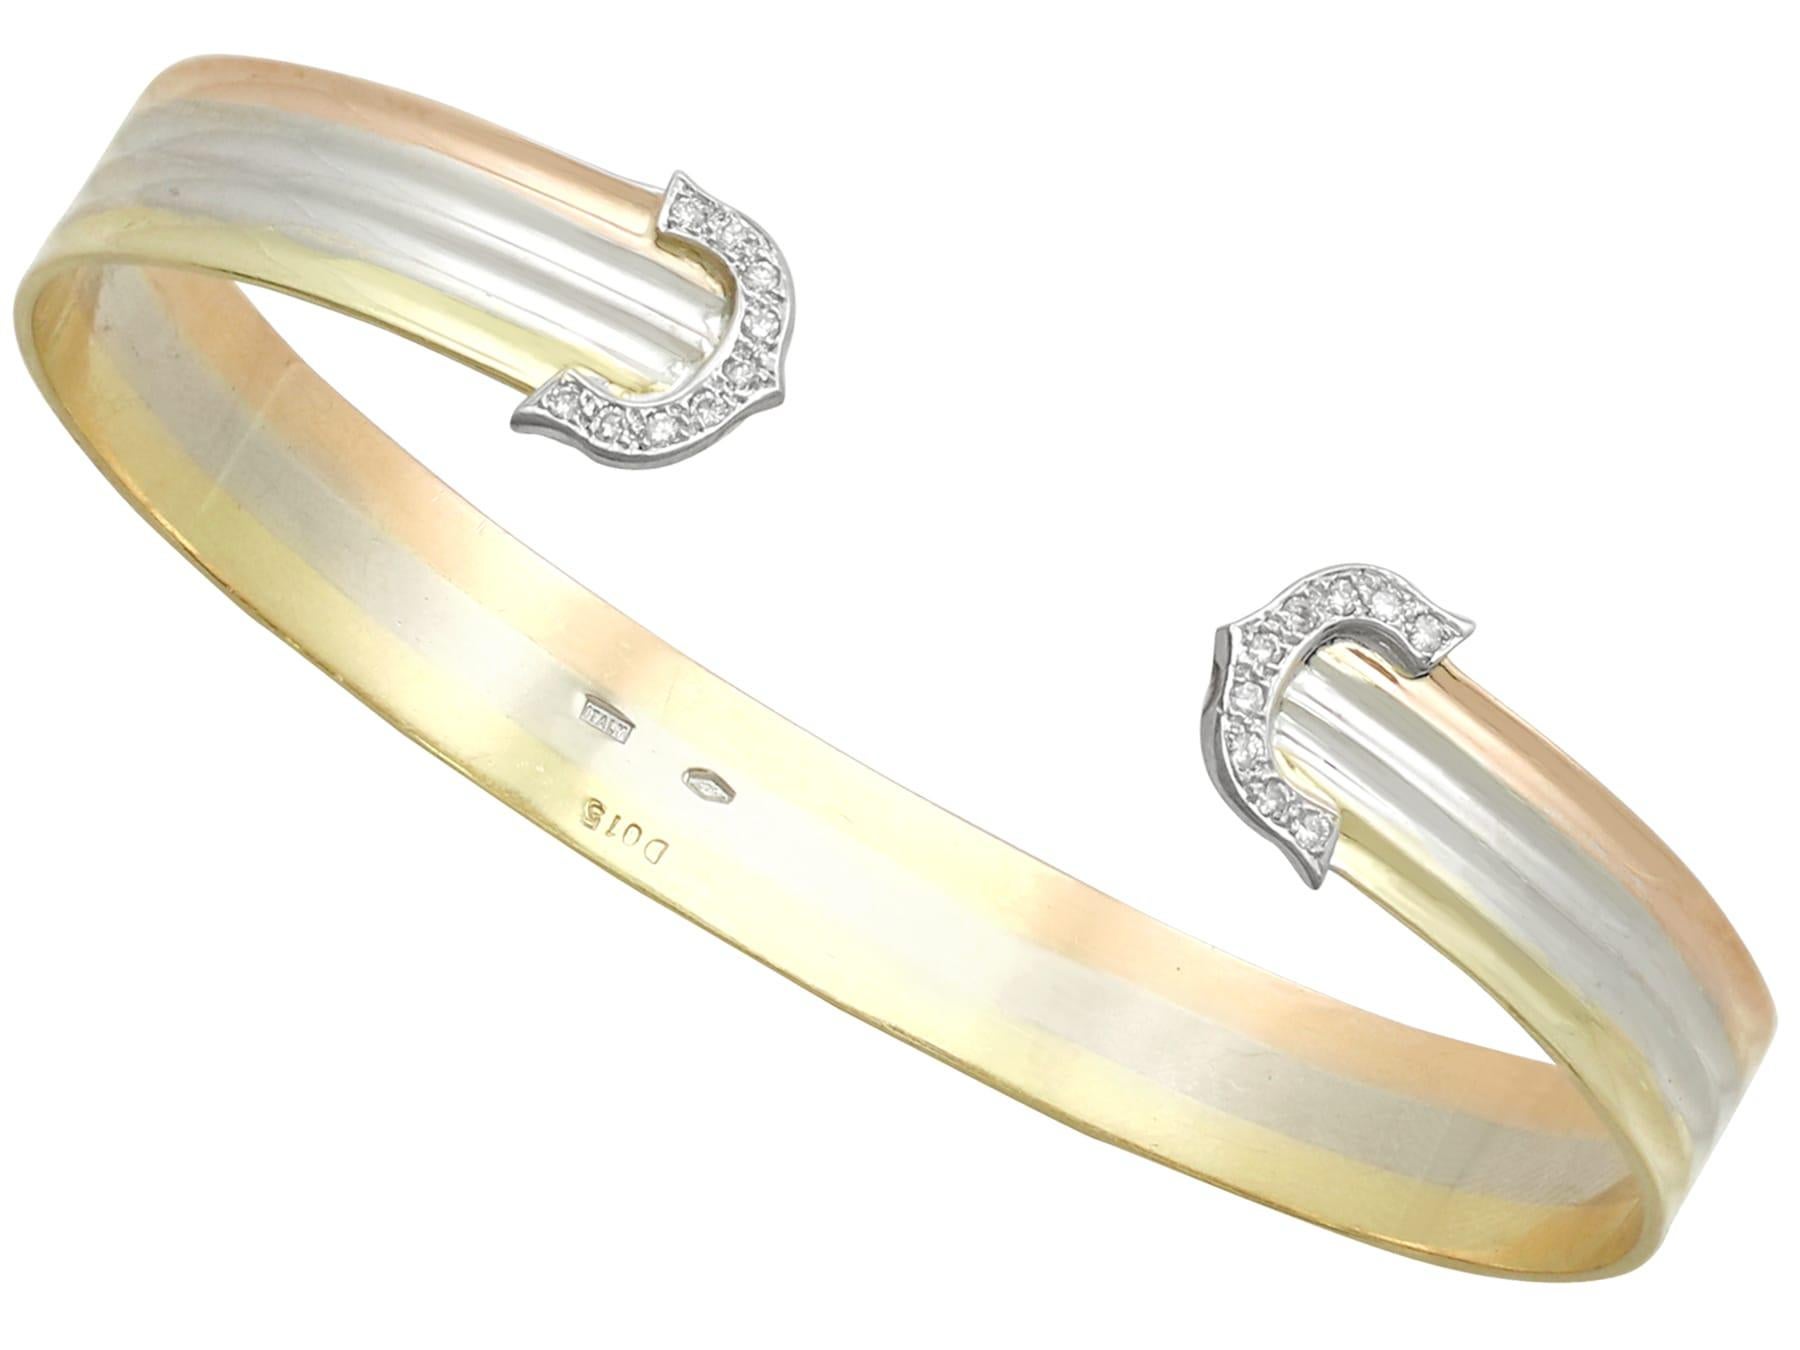 Ein beeindruckender italienischer Vintage-Schmuck mit 0,86 Karat Diamanten und 18 Karat Weiß-, Gelb- und Roségold, bestehend aus Armreif, Ring und Ohrringen; Teil unserer vielfältigen Diamantschmuck-Kollektionen.

Dieses feine und beeindruckende